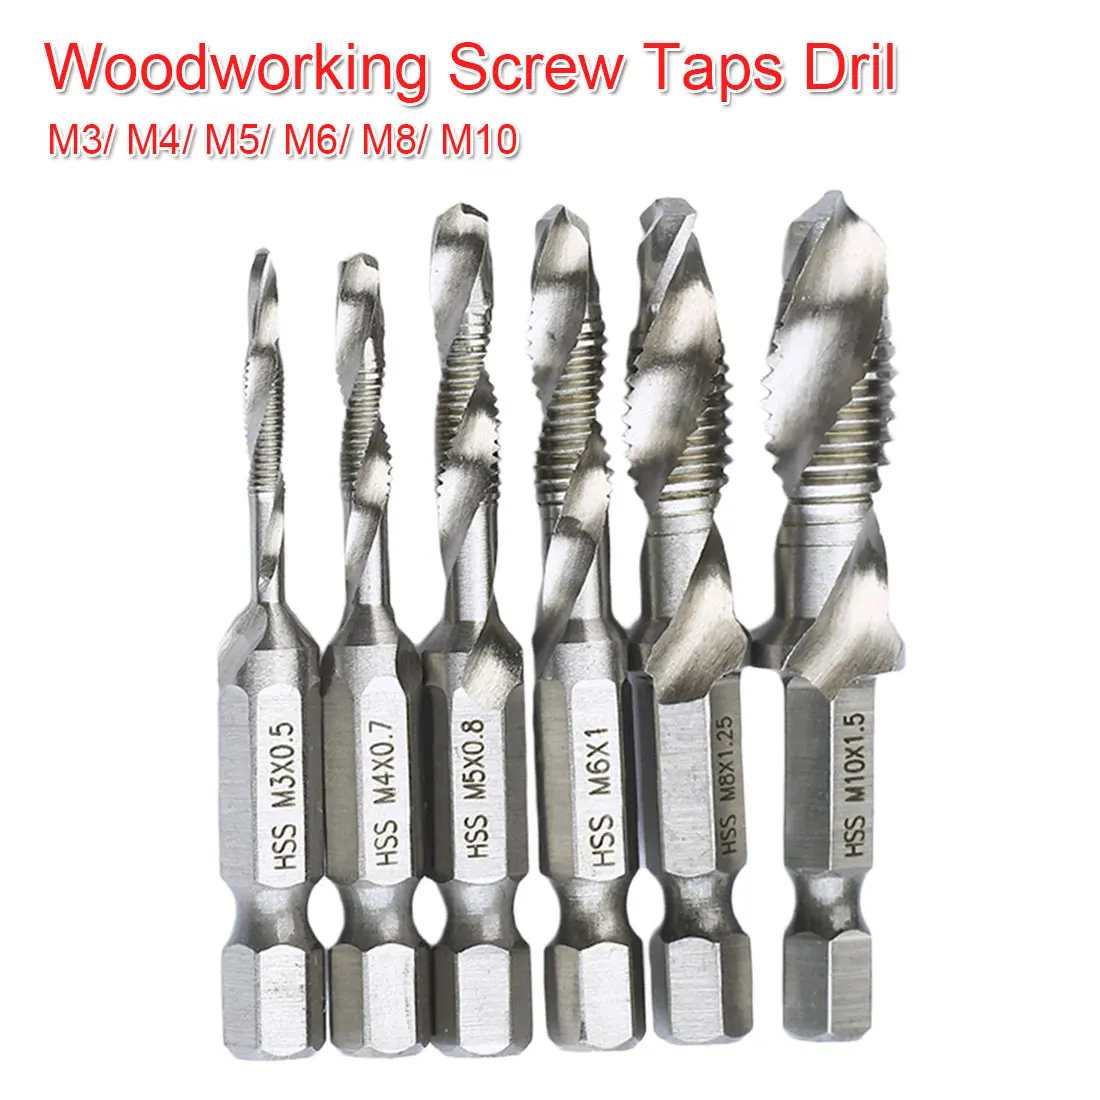 

Screw Taps Dril Bits 1/4'' Hex Shank M3 M4 M5 M6 M8 M10 Thread Tap Spiral Screw Dril Bit Woodworking Tools